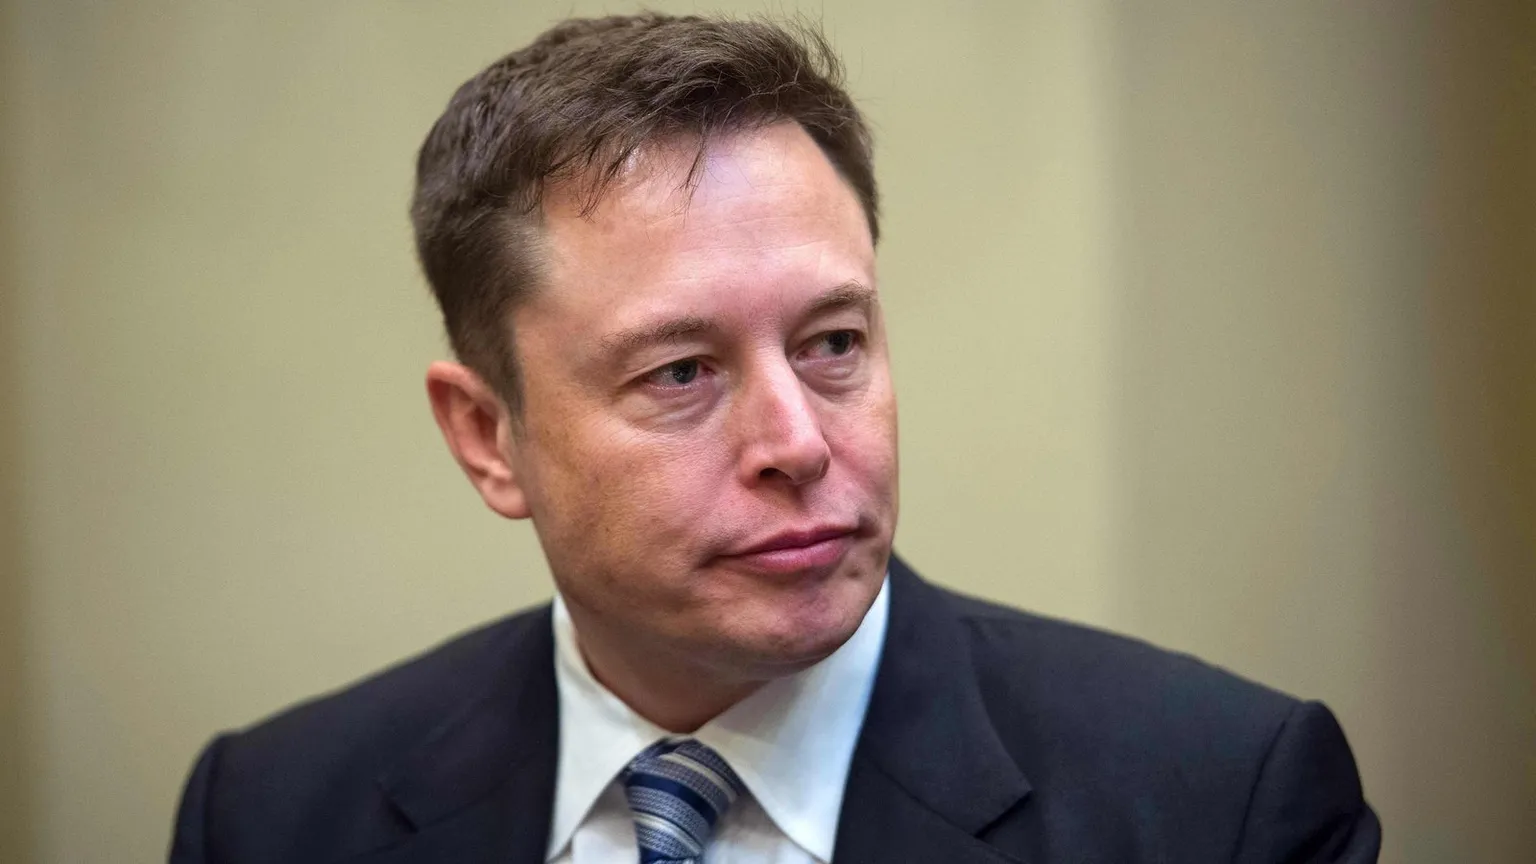 Tesla CEO Elon Musk. Image: Shutterstock